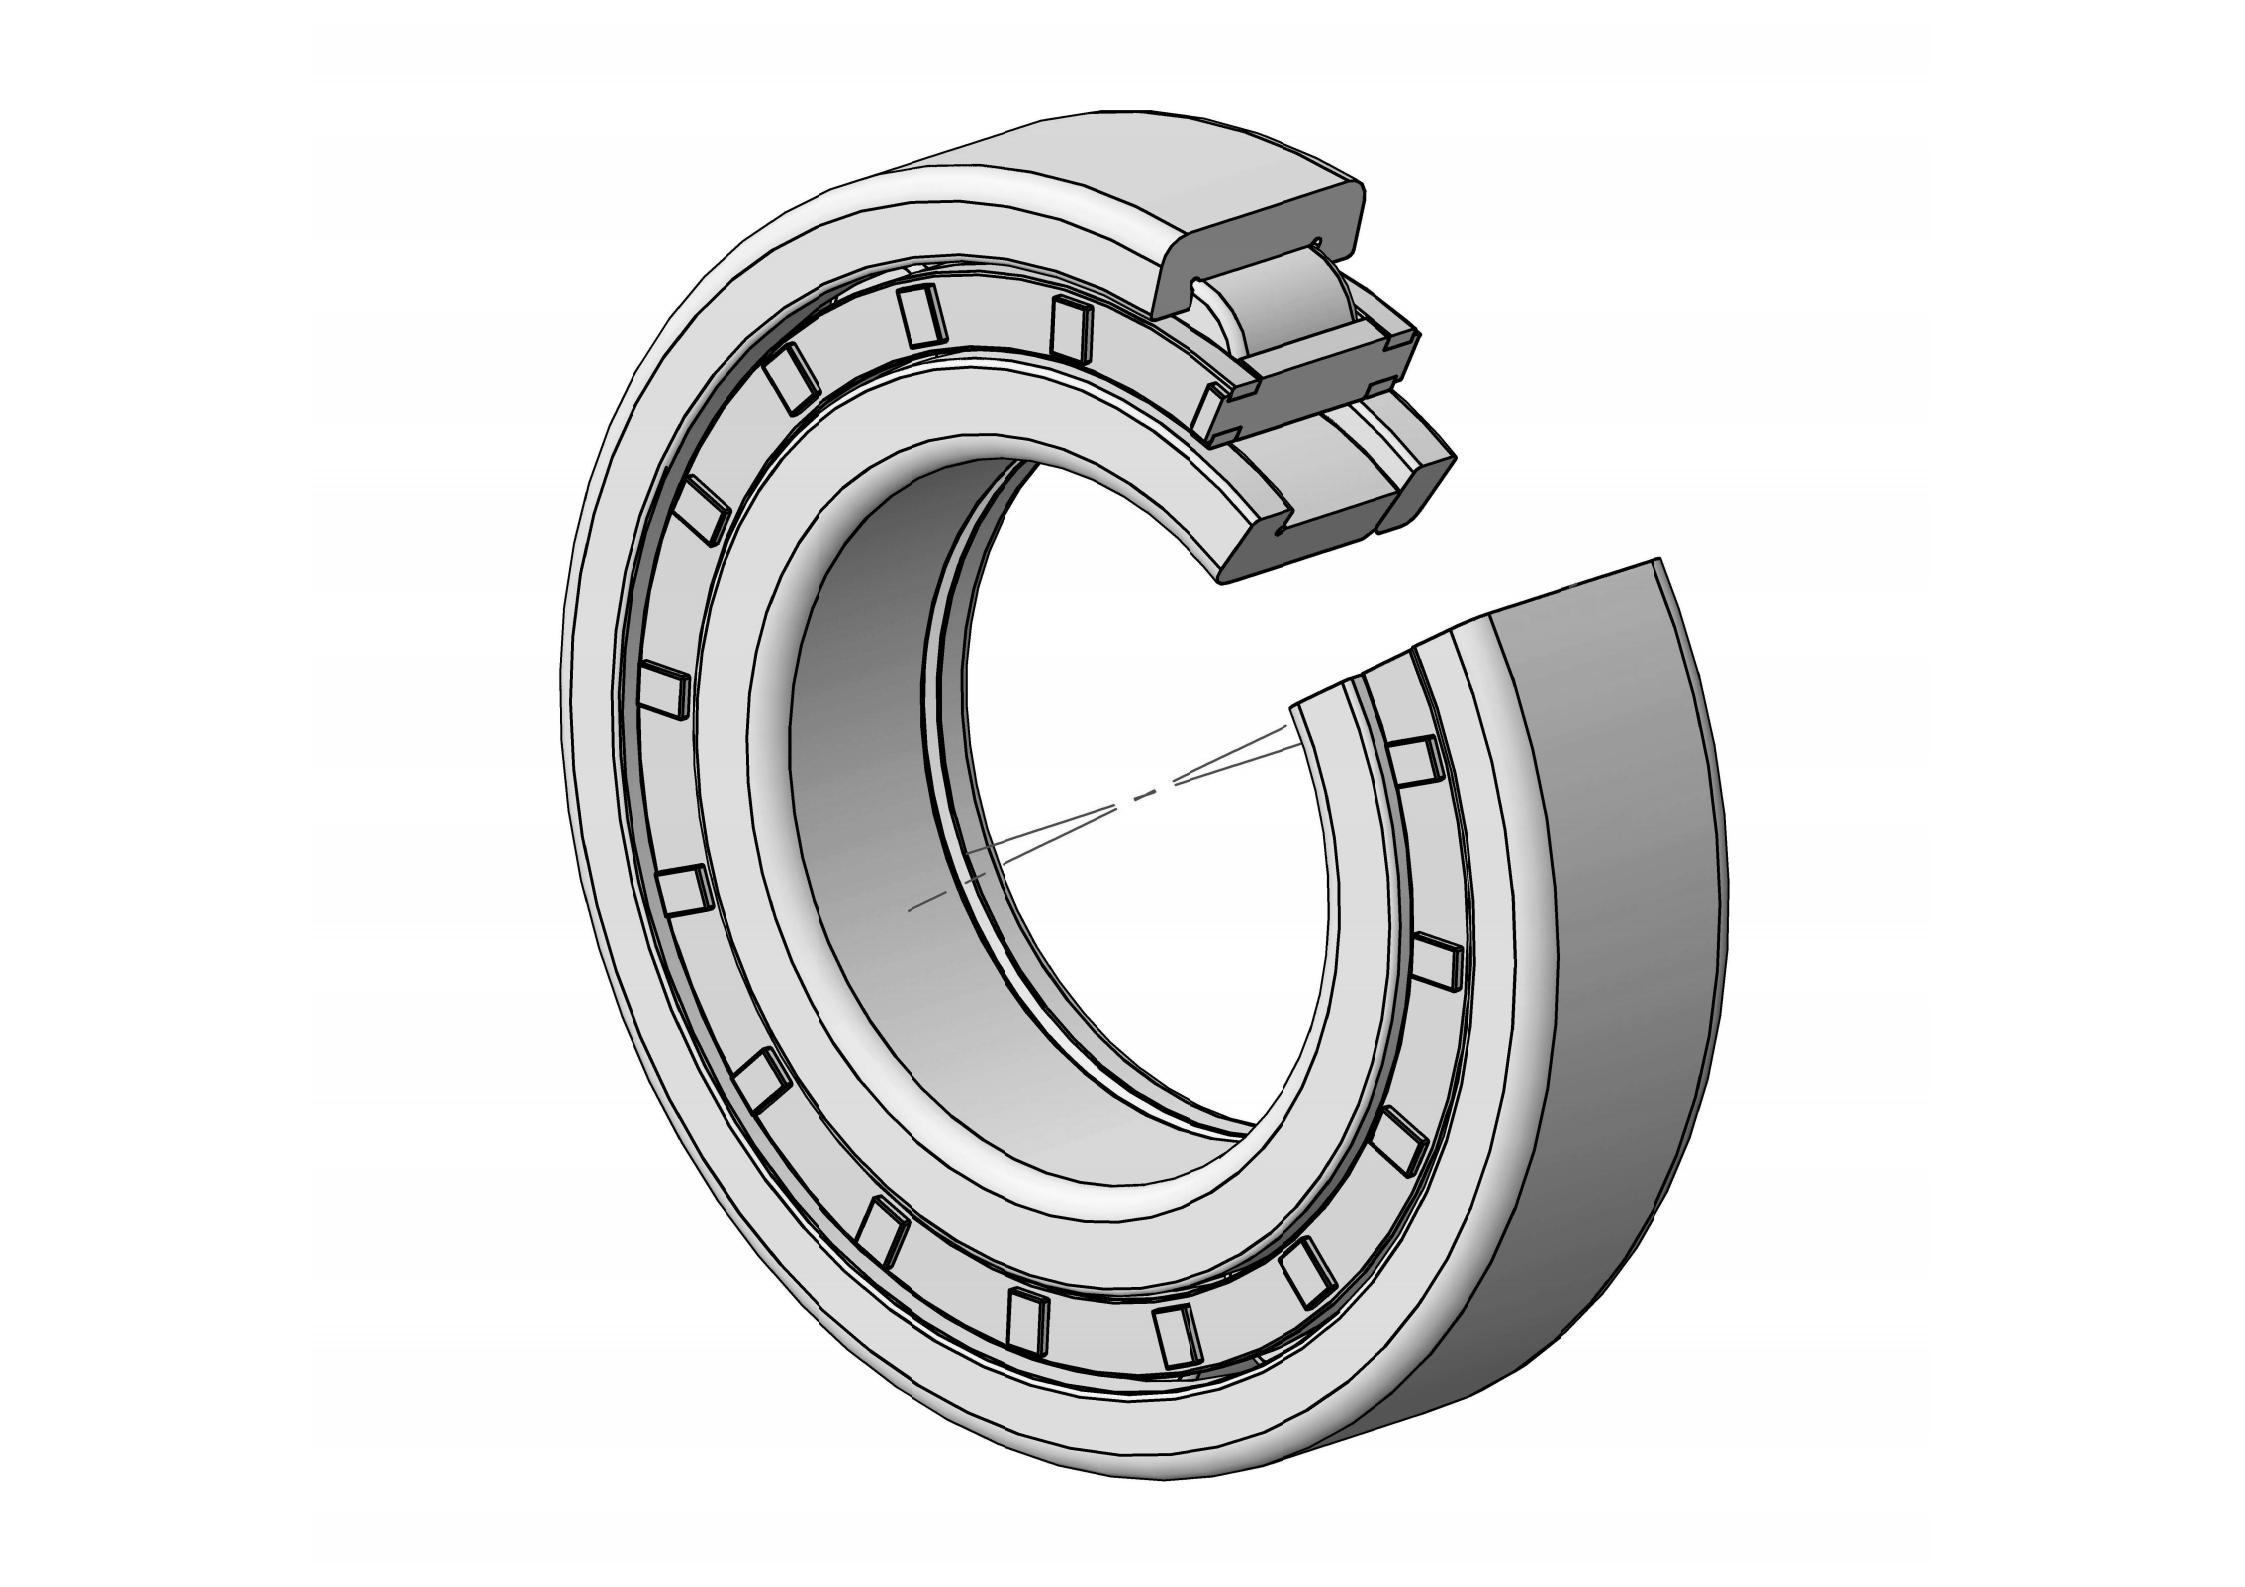 NUP226-EM Otu ahịrị cylindrical roller bearing